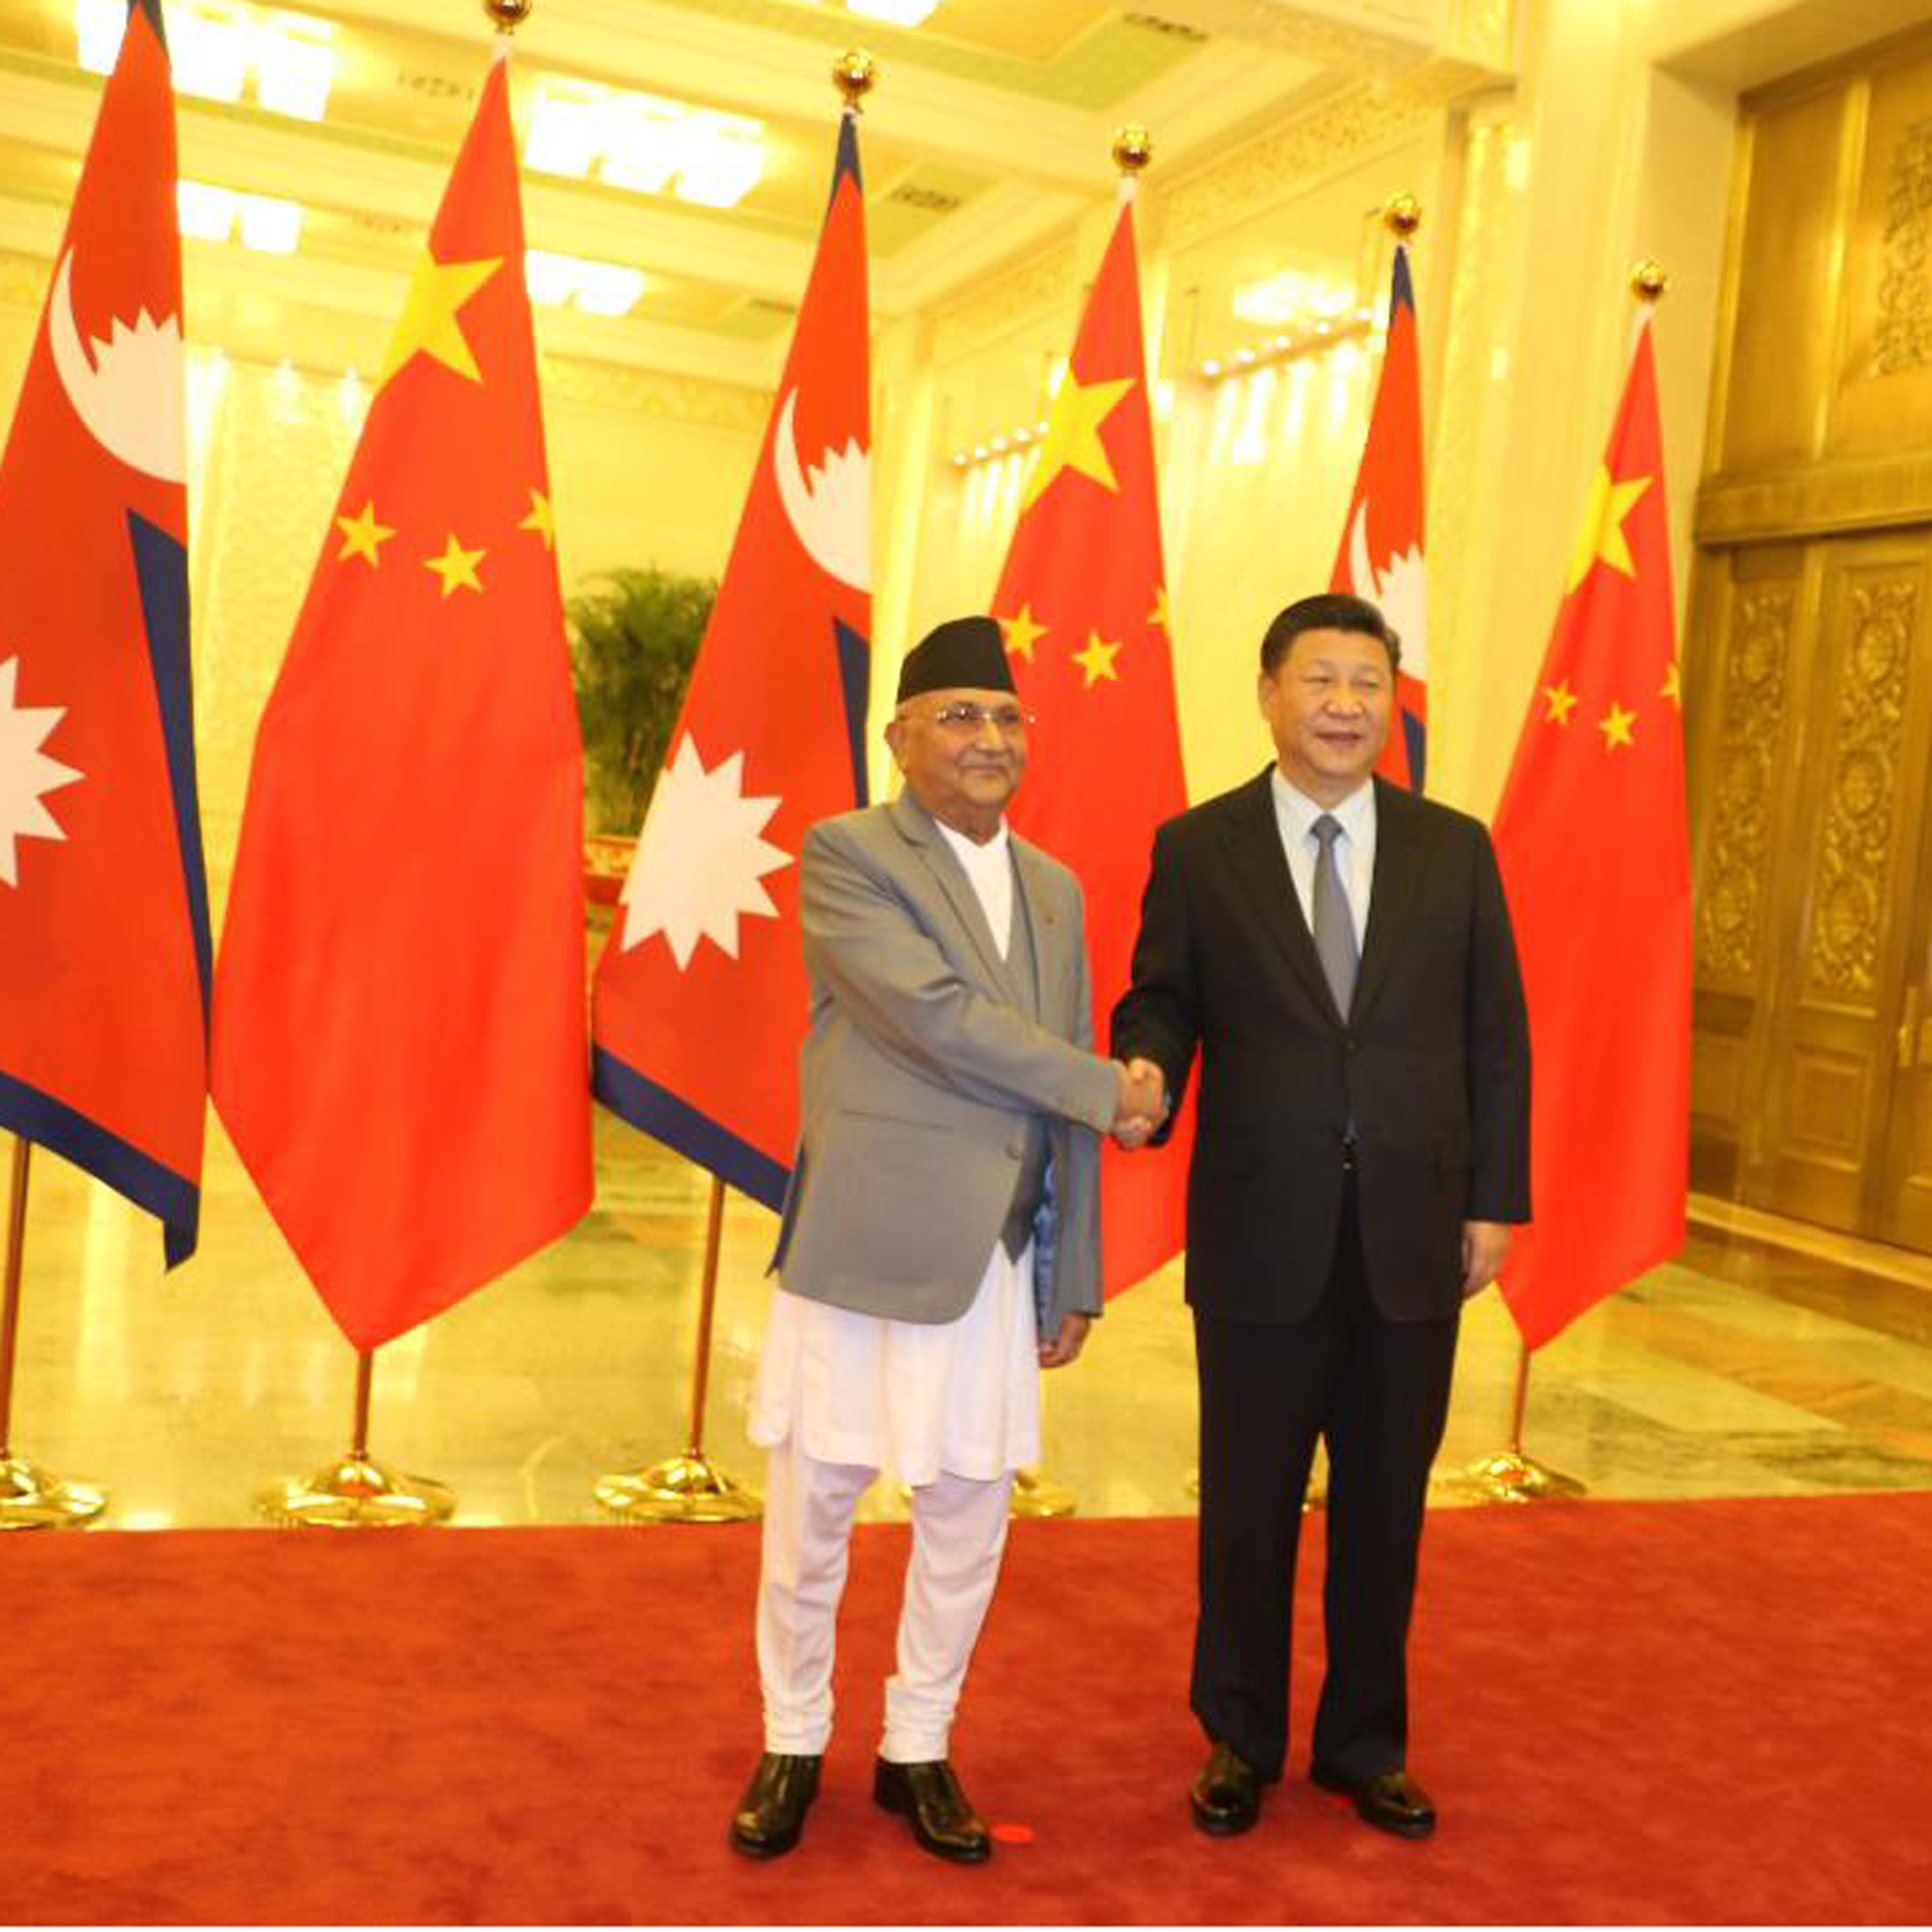 प्रधानमन्त्रीको चीन भ्रमणः सात बर्षमा रेल, नेपाल आउने राष्ट्रपतिको बाचा